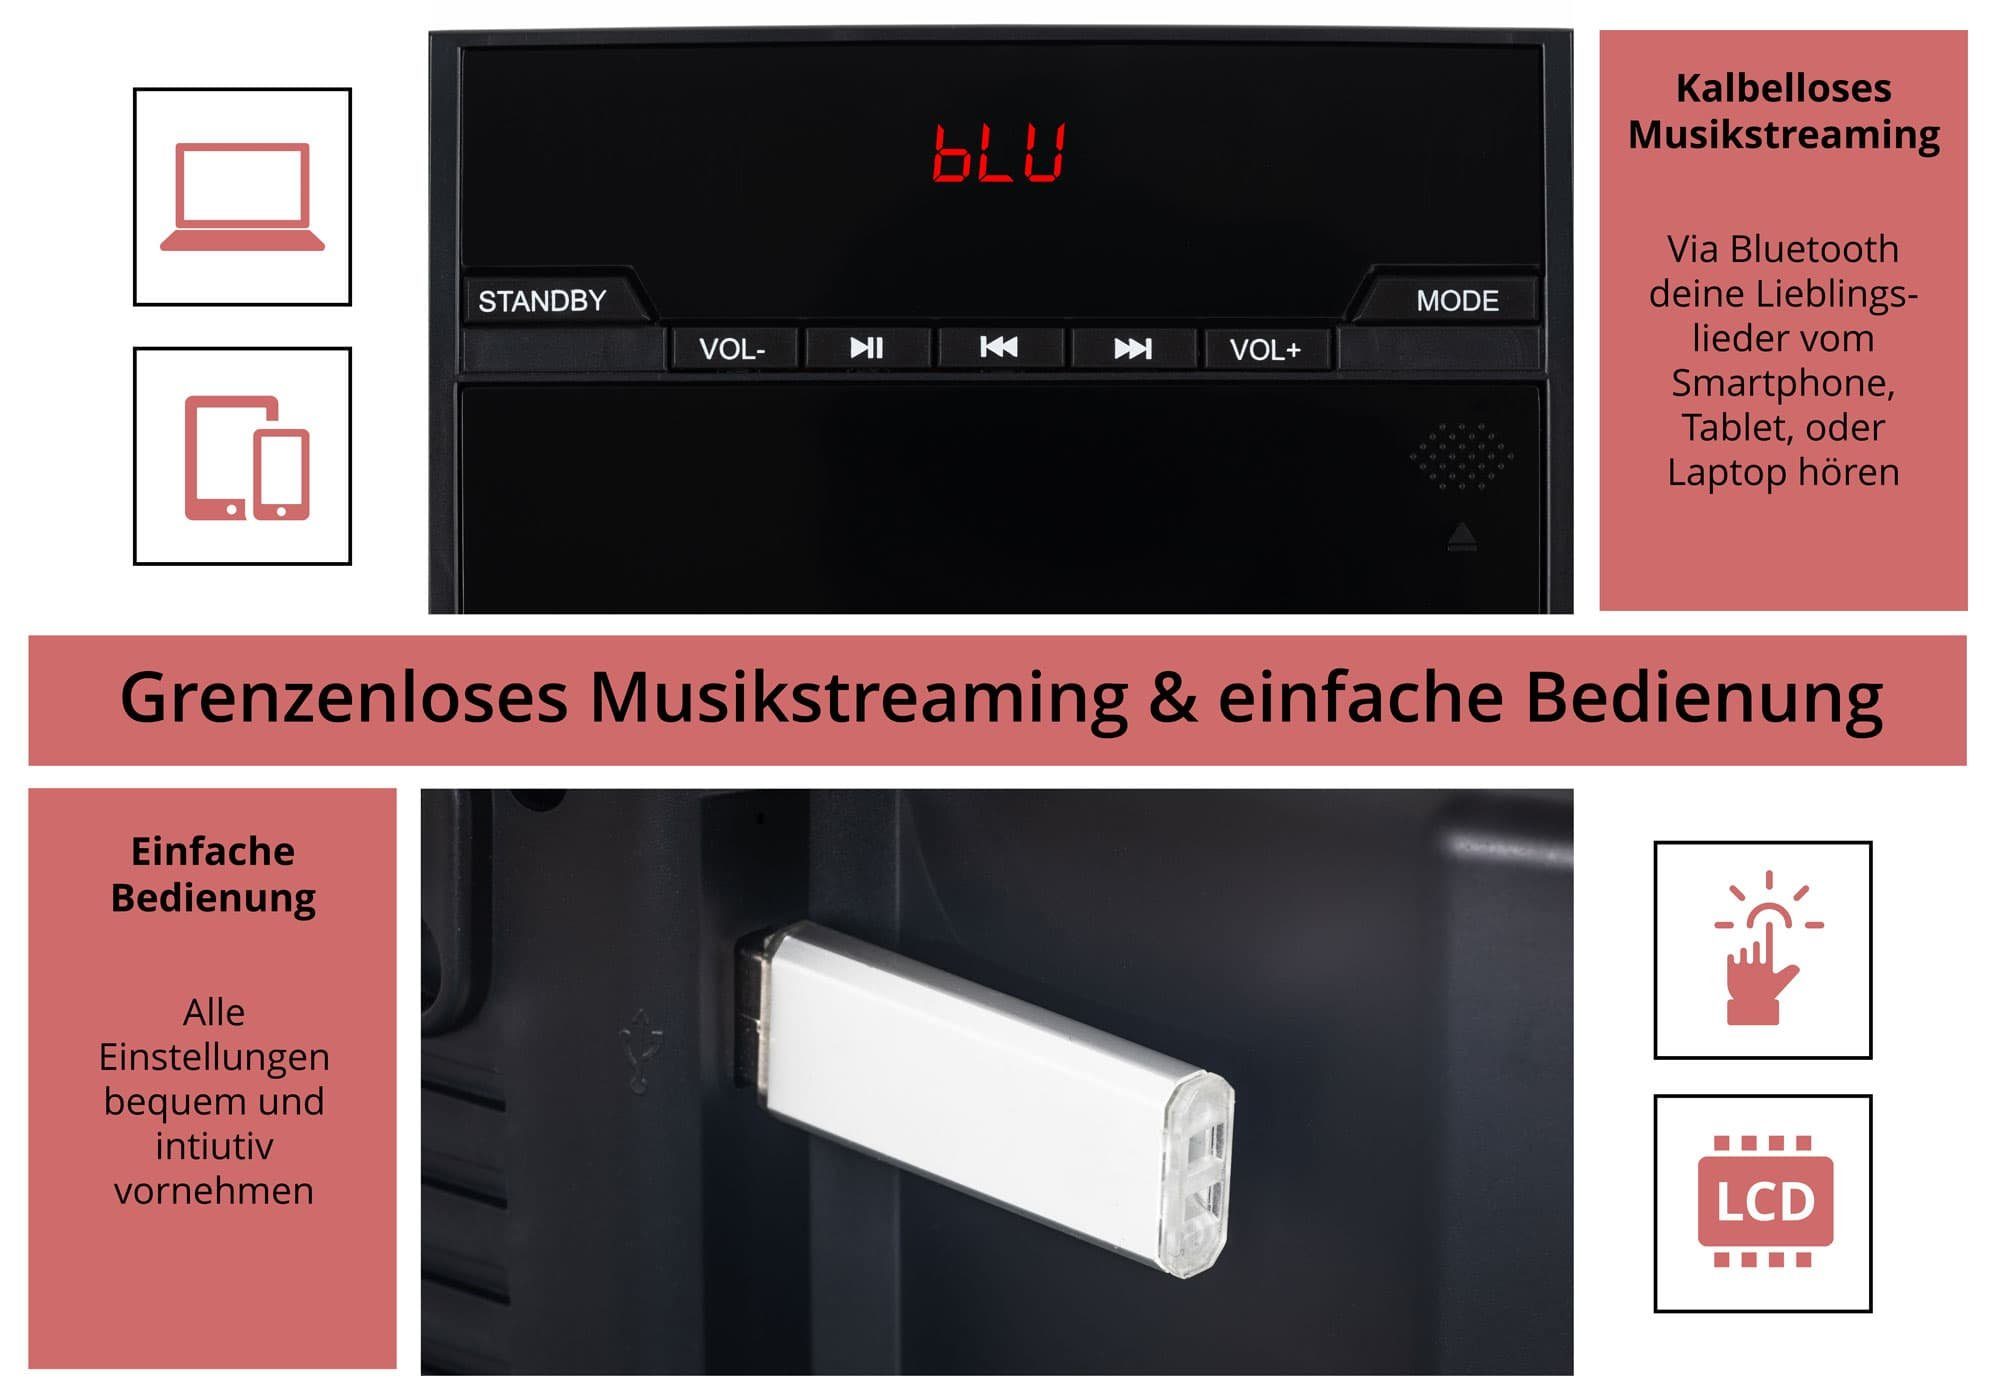 6,00 Bluetooth) MCD-60 Microanlage mit W, CD/MP3-Player, Beatfoxx USB-Slot (UKW/MW-Radio, und Vertikal Stereoanlage